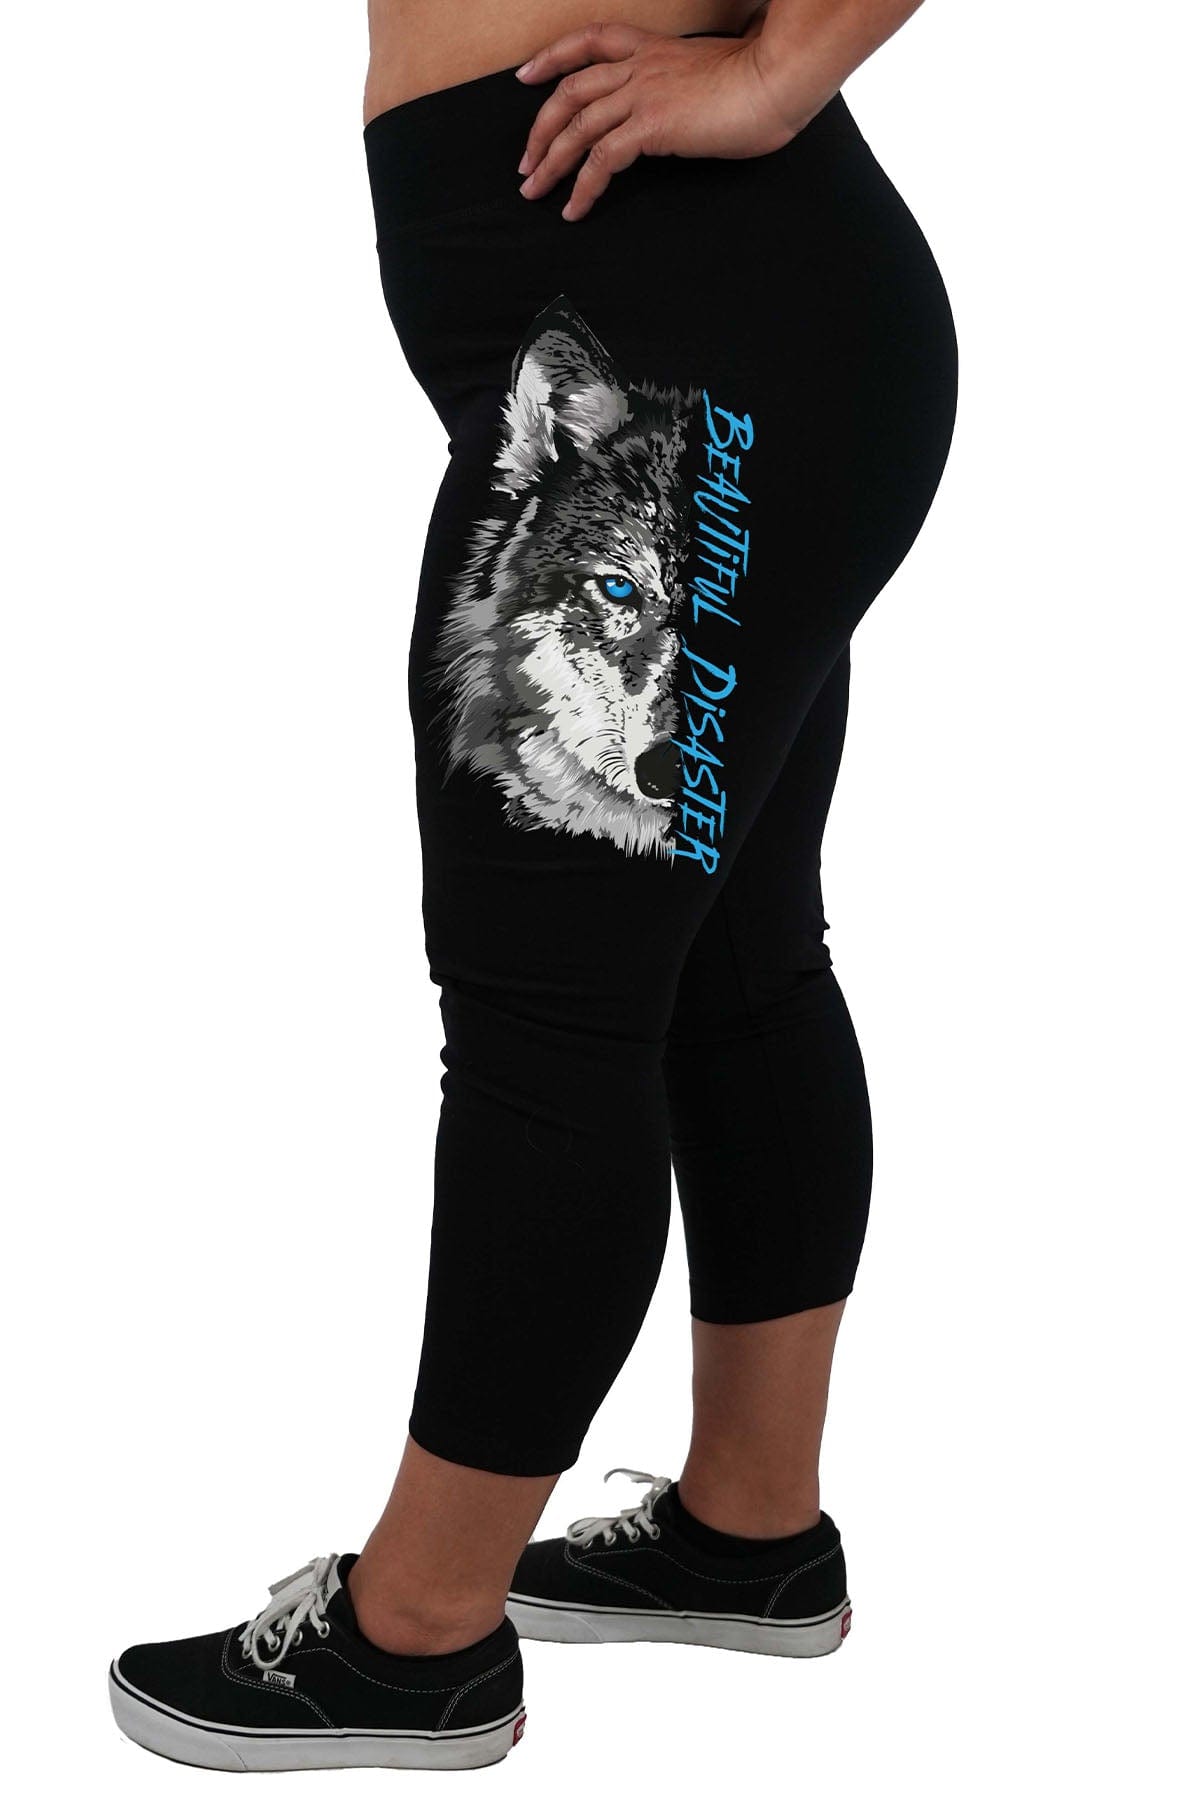 Black Wolf Capris for Women Printed Black Capri Leggings With Grey